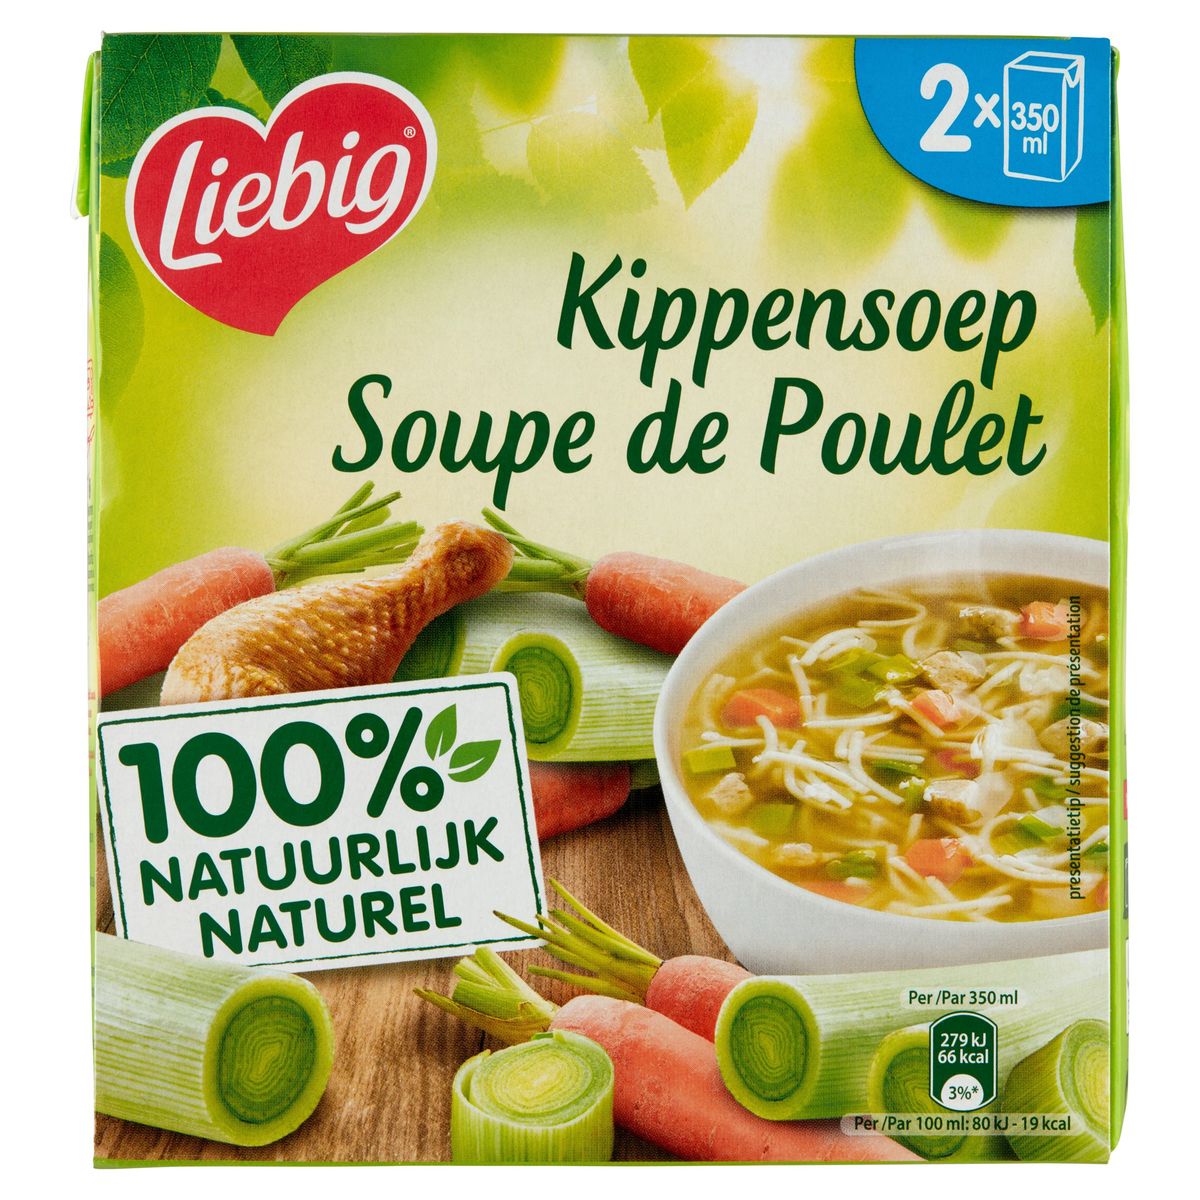 Liebig Soupe de Poulet 2 x 350 ml